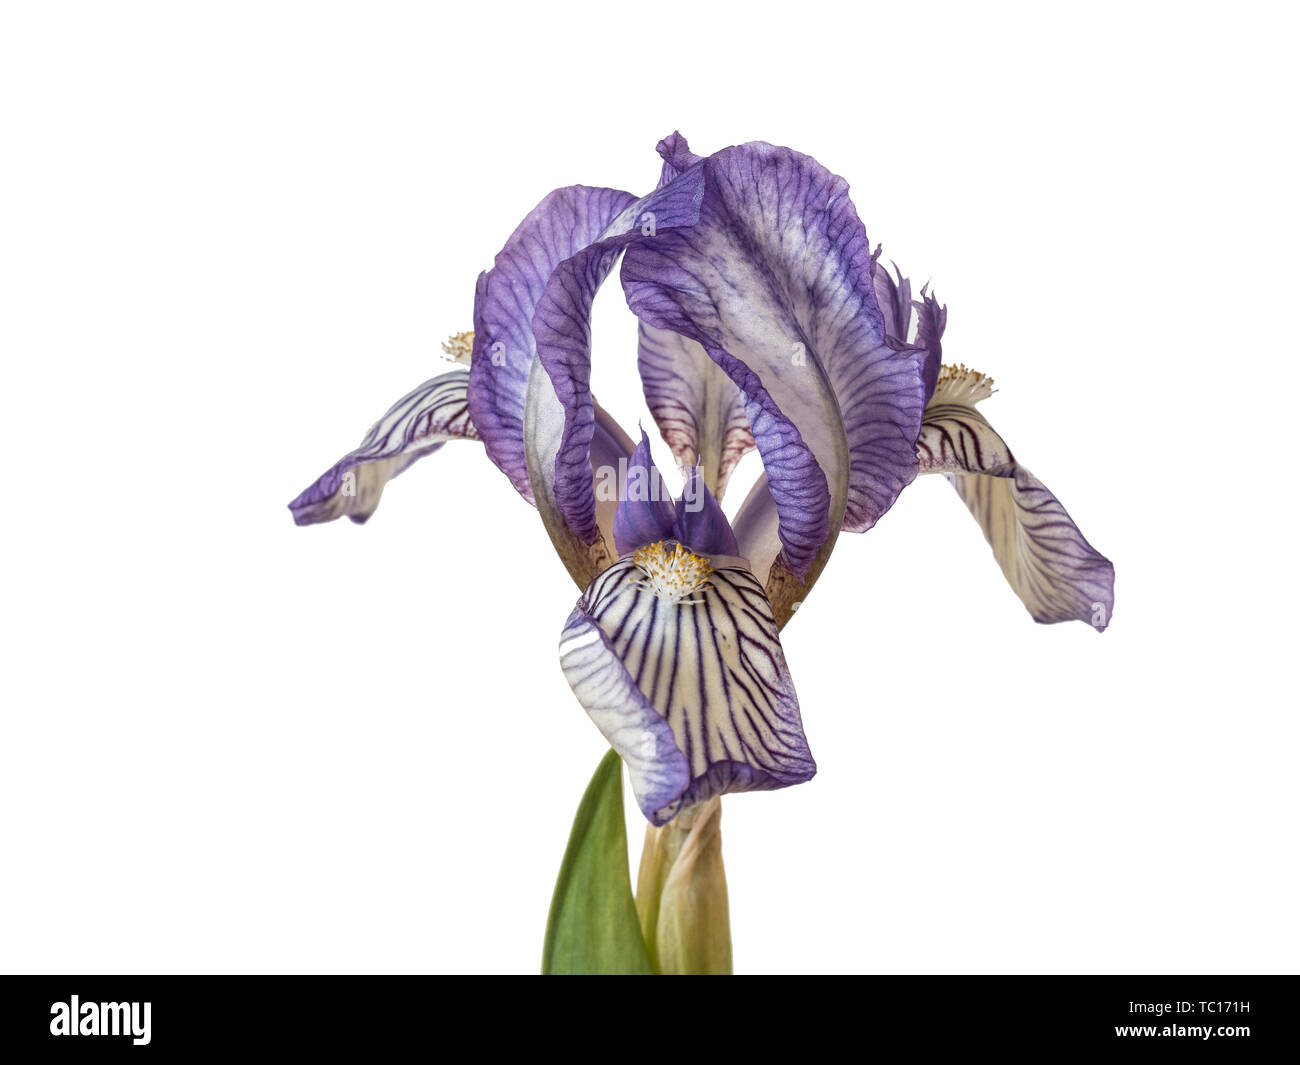 Nahaufnahme der hellblauen Blumen Iris Schreiber gegen einen reinen, weißen  Hintergrund Stockfotografie - Alamy